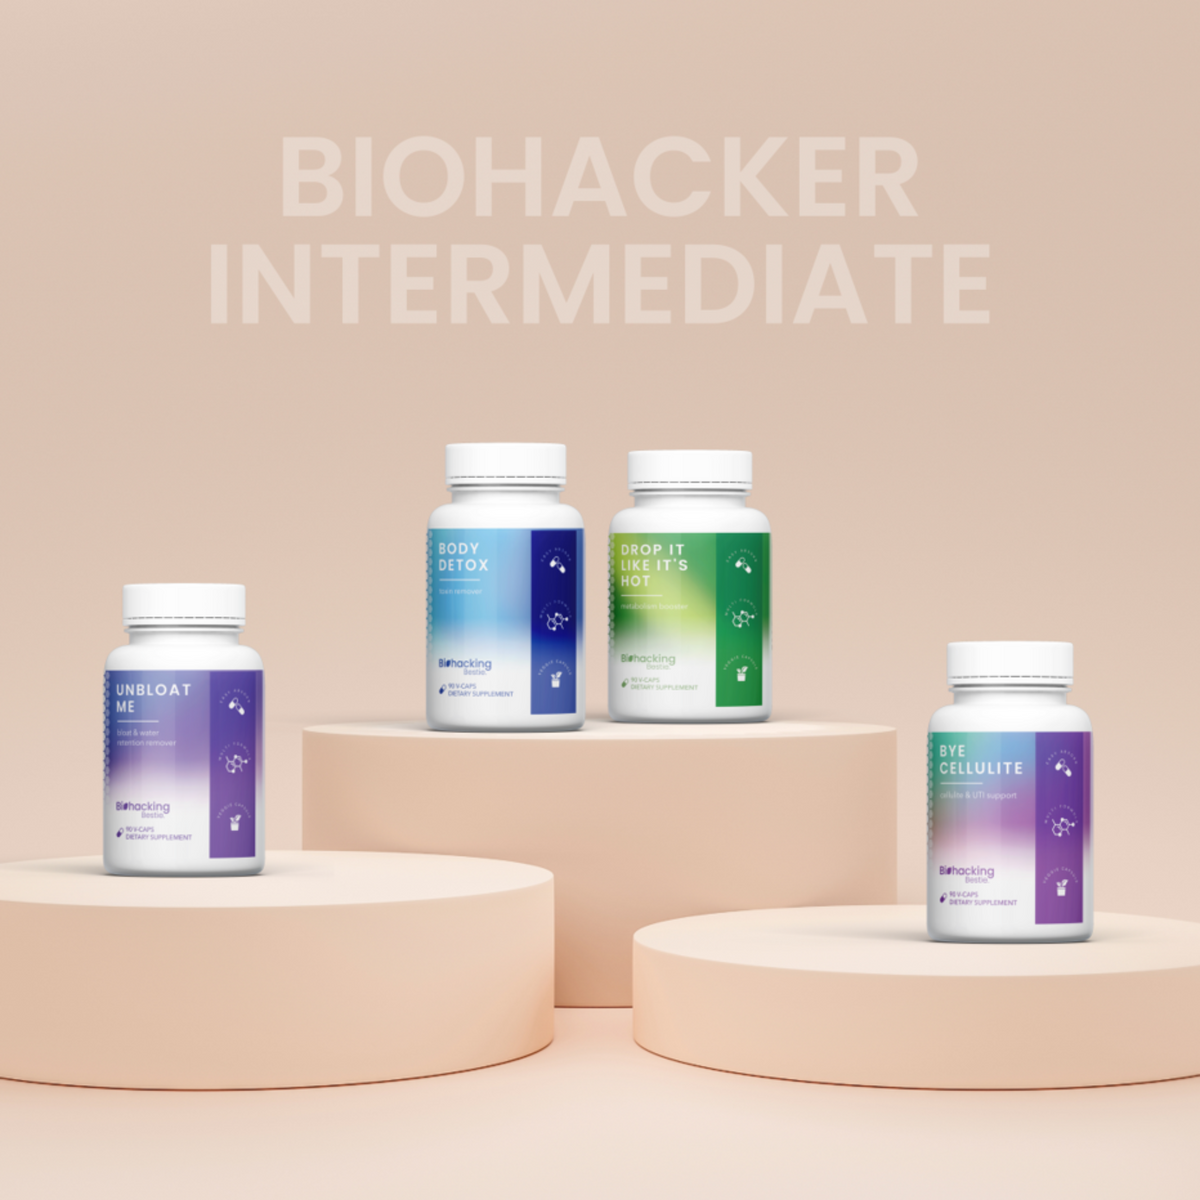 Biohacker Intermediate